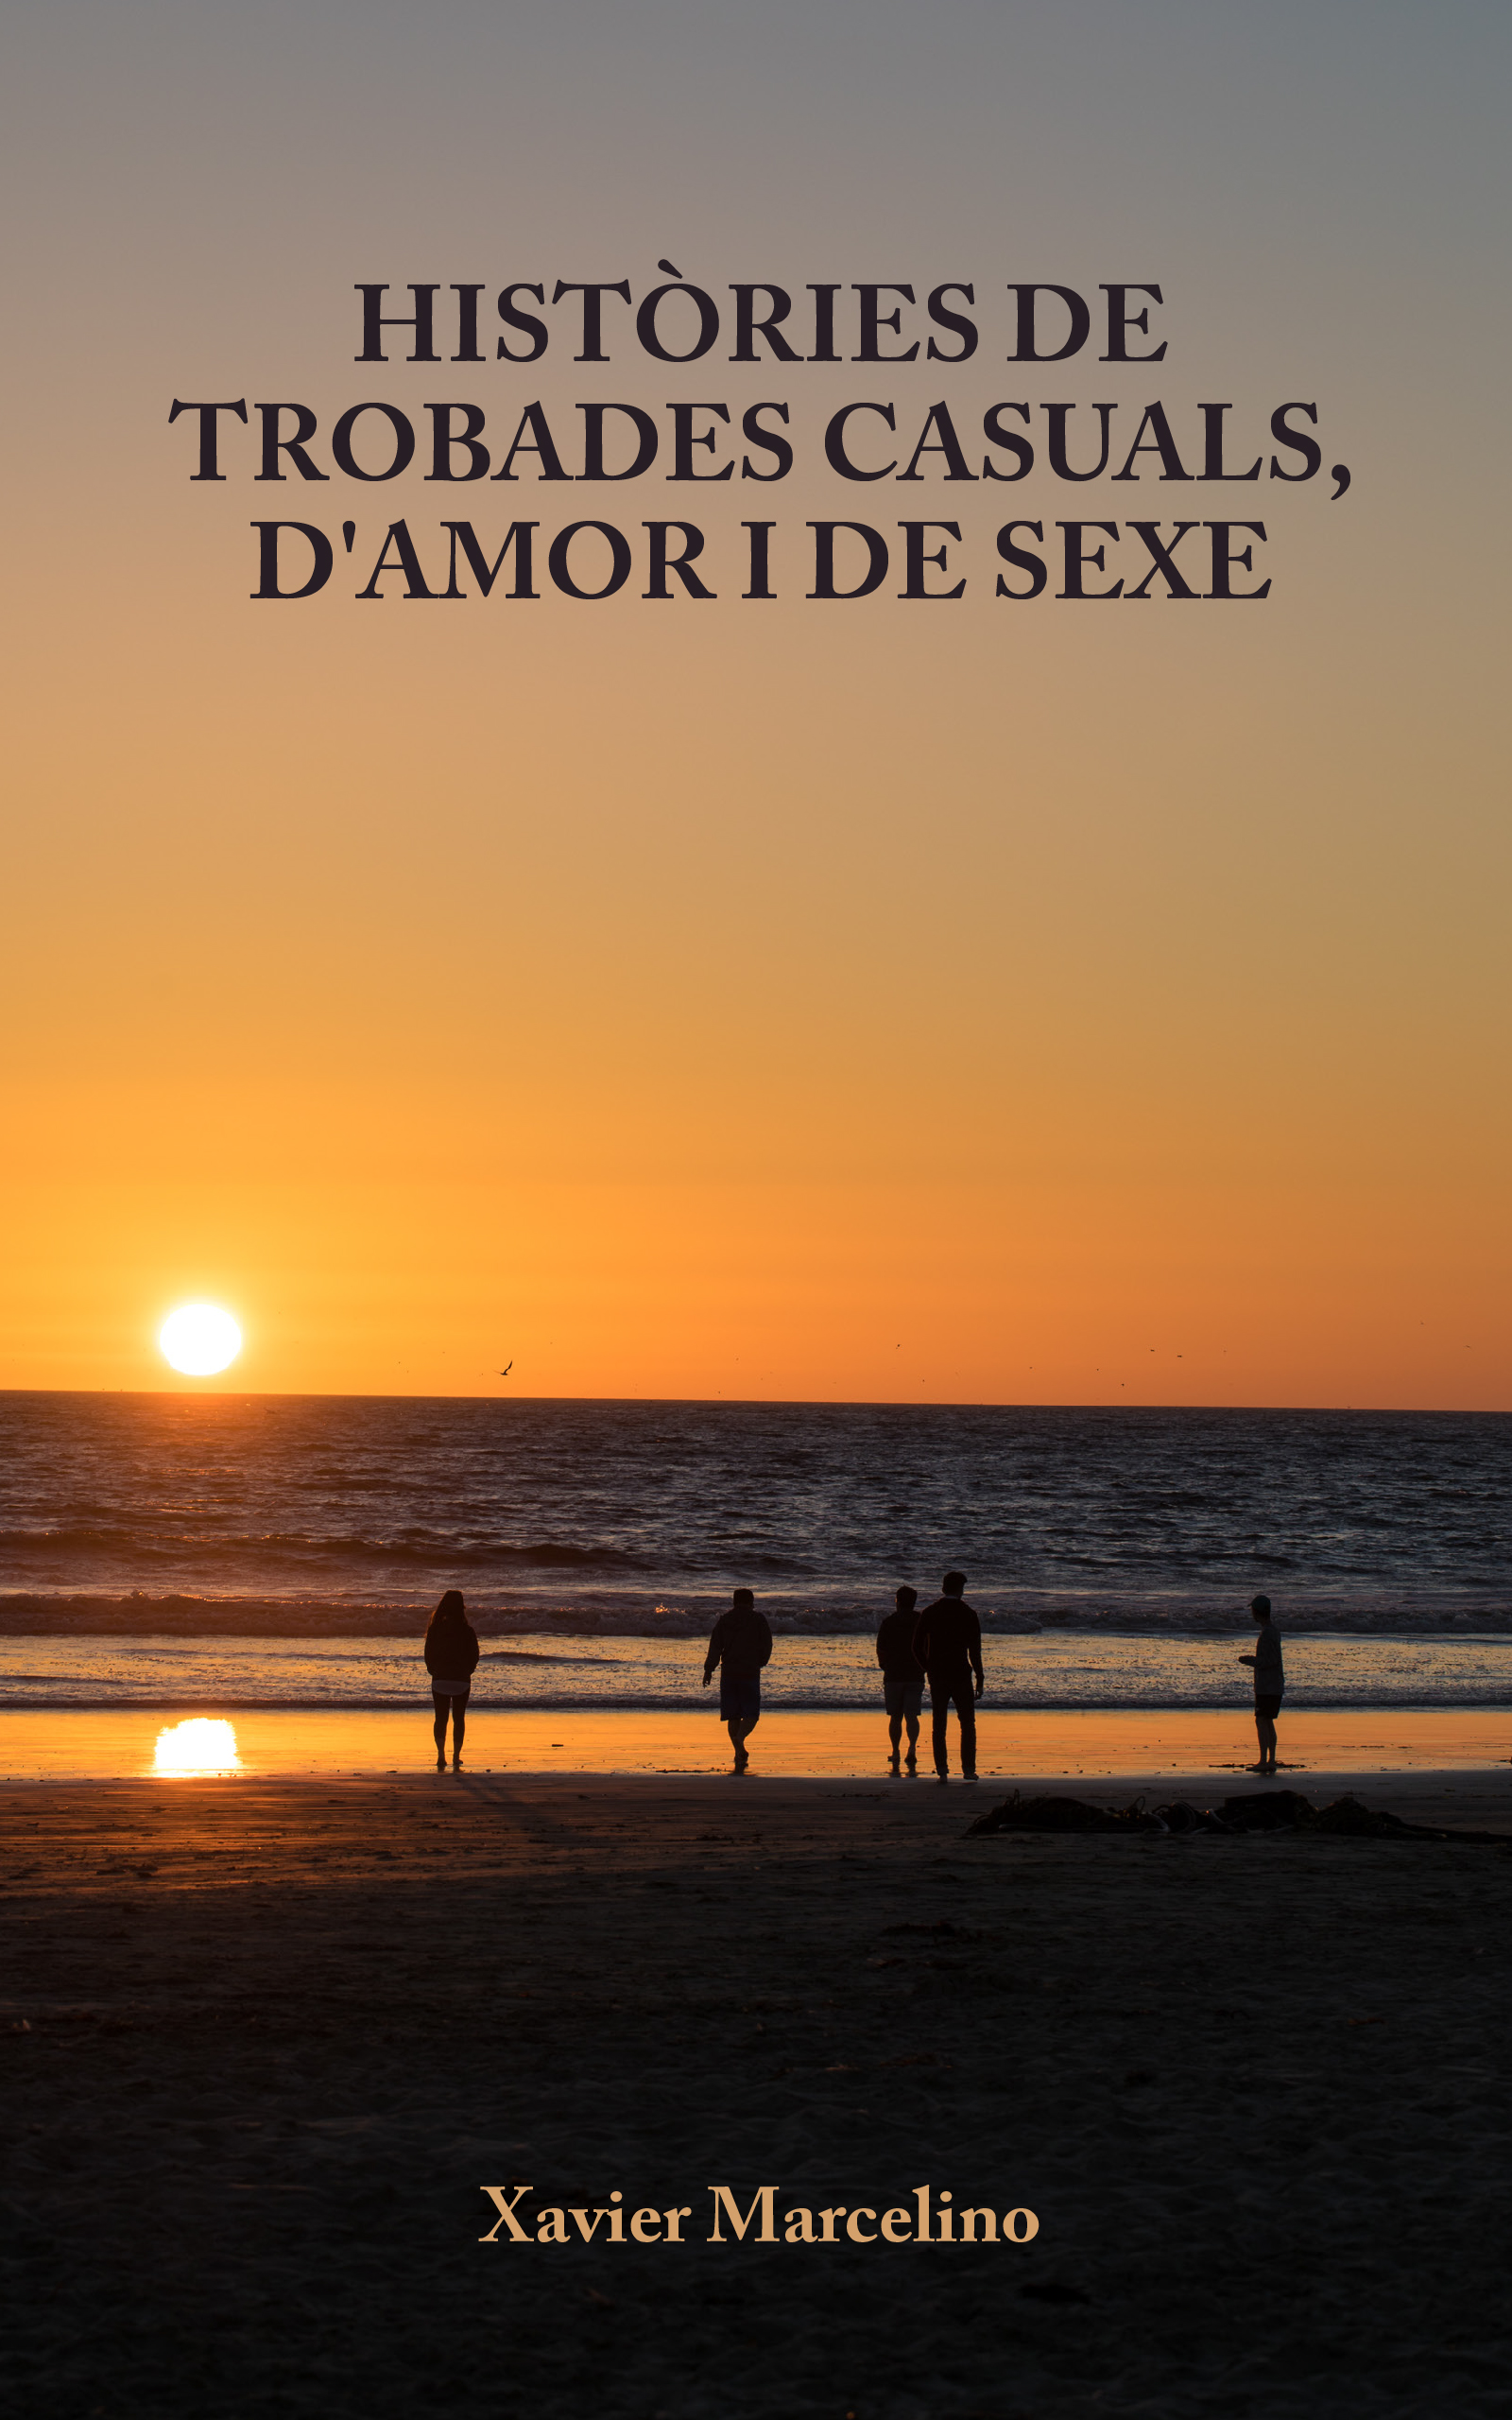 Històries de trobades casuals, d’amor i de sexe, de Xavier Marcelino